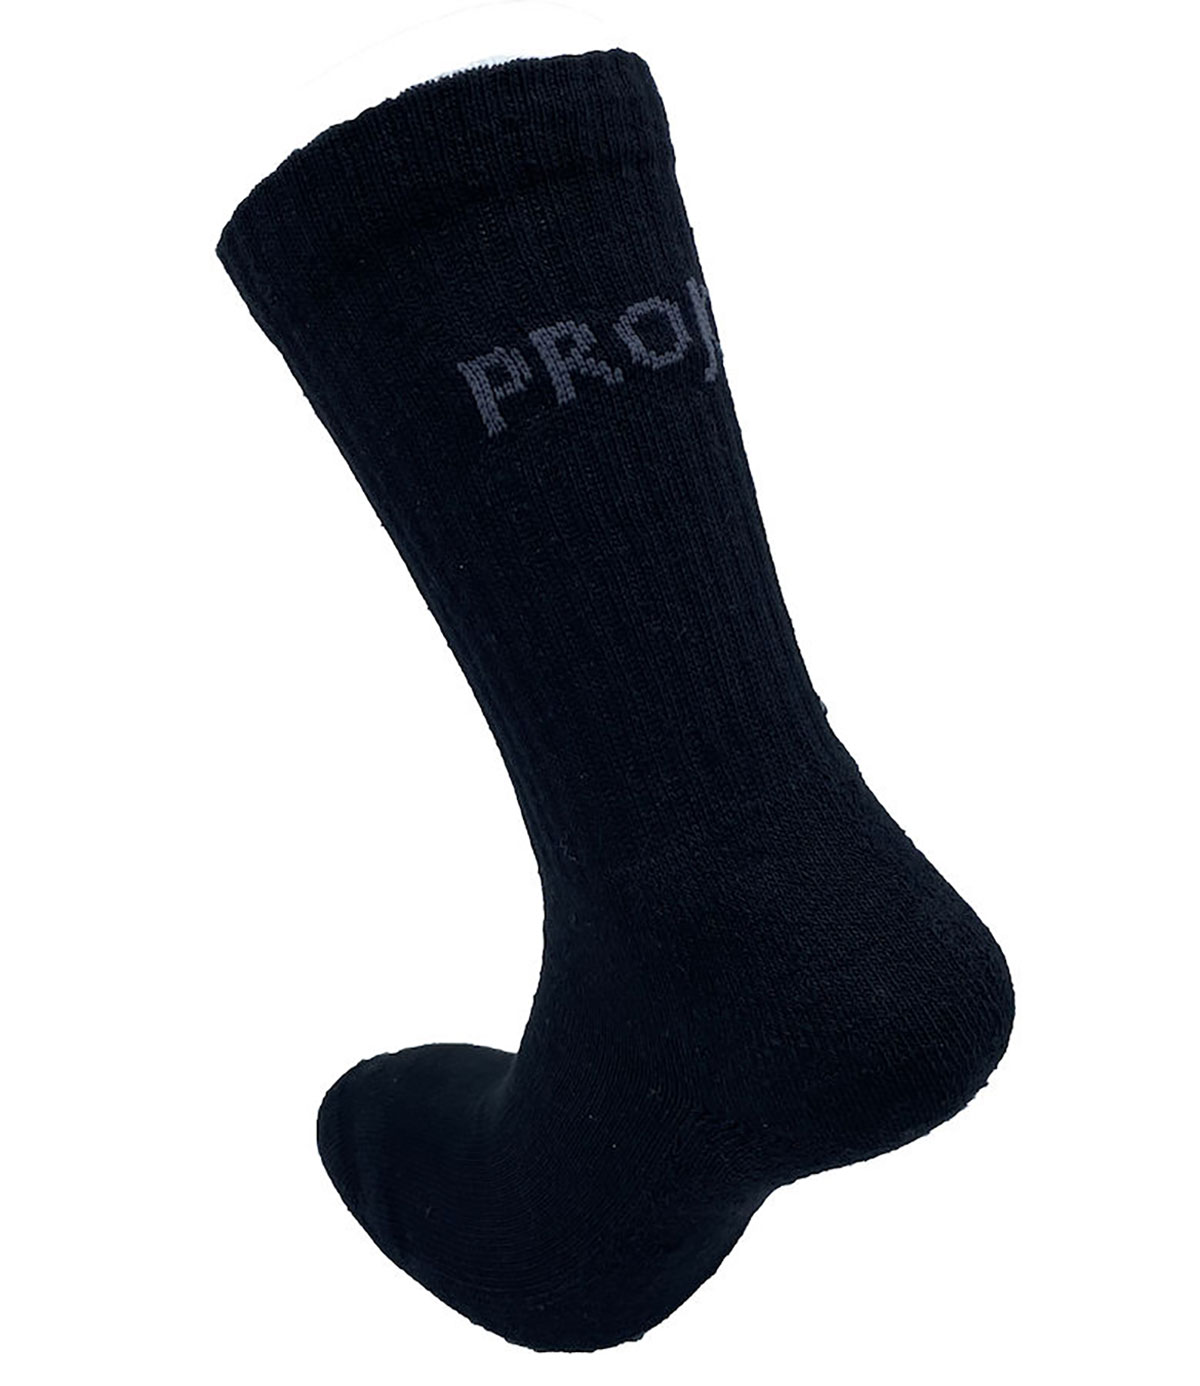 Socken 3-er Pack ProJob 9080